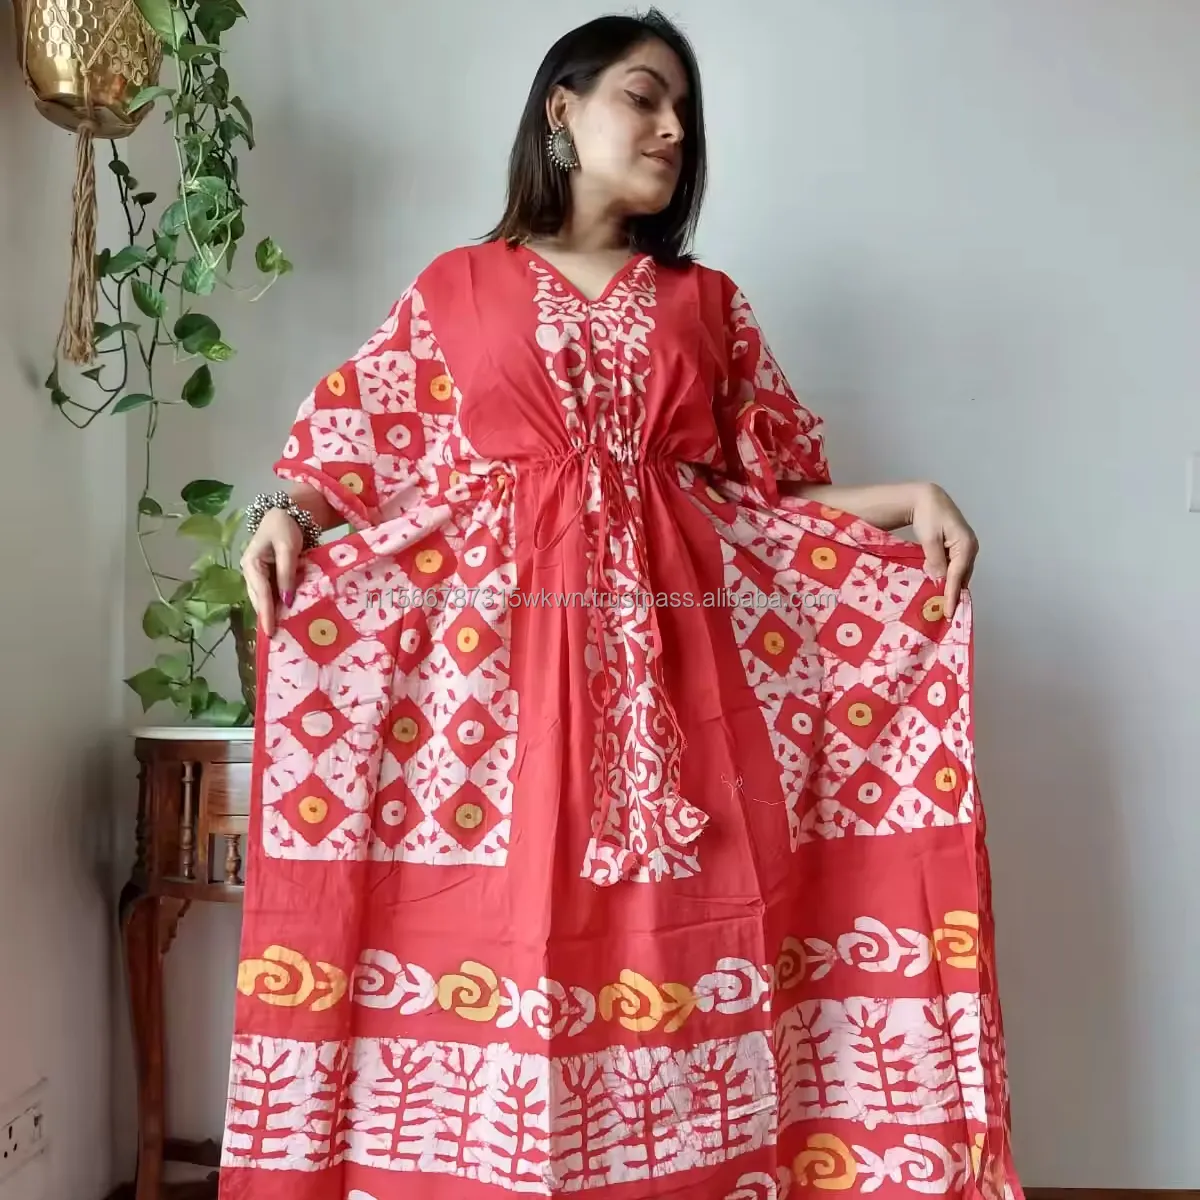 Indian Handmade Bird Printed Kaftan Women Long Cotton Caftan Women Pure Natural Fabric Floral Short Caftan Beach Wear Dress